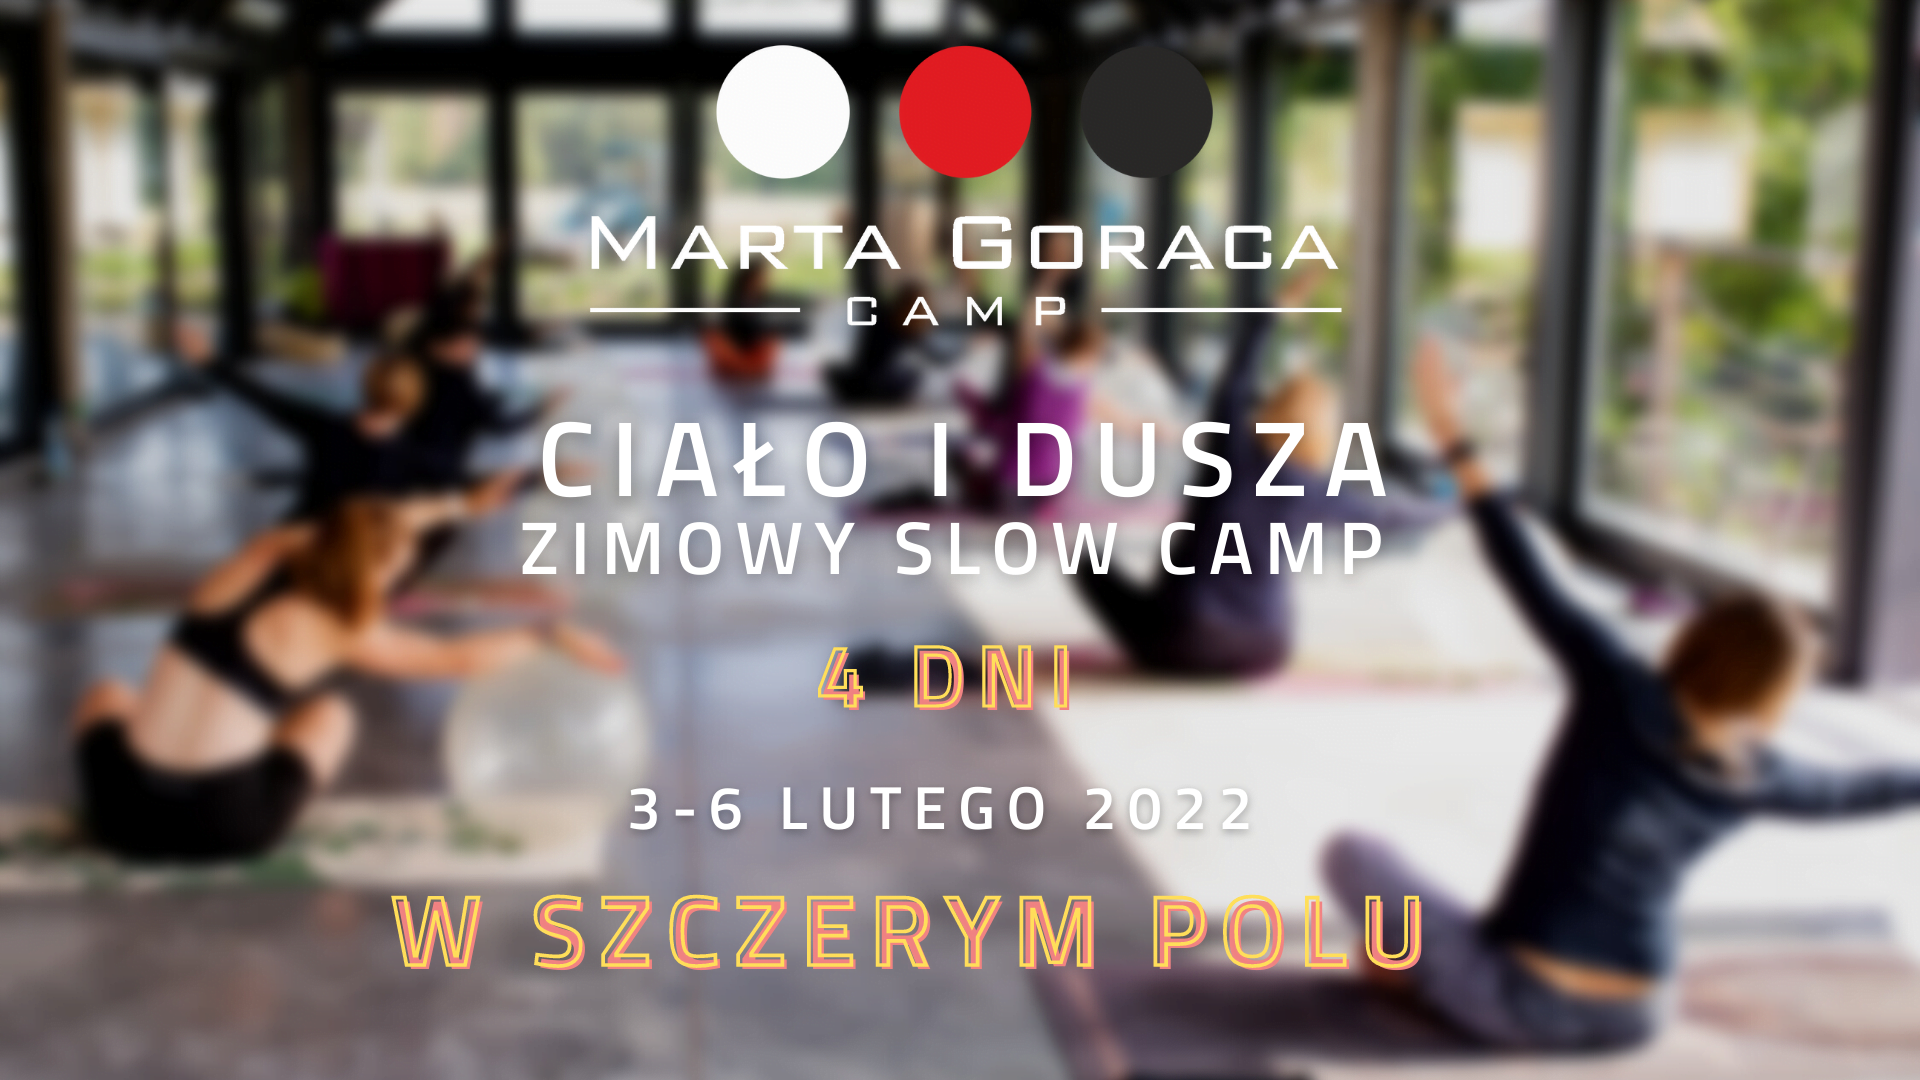 MARTA GORĄCA CAMP – ZIMOWY SLOW CAMP